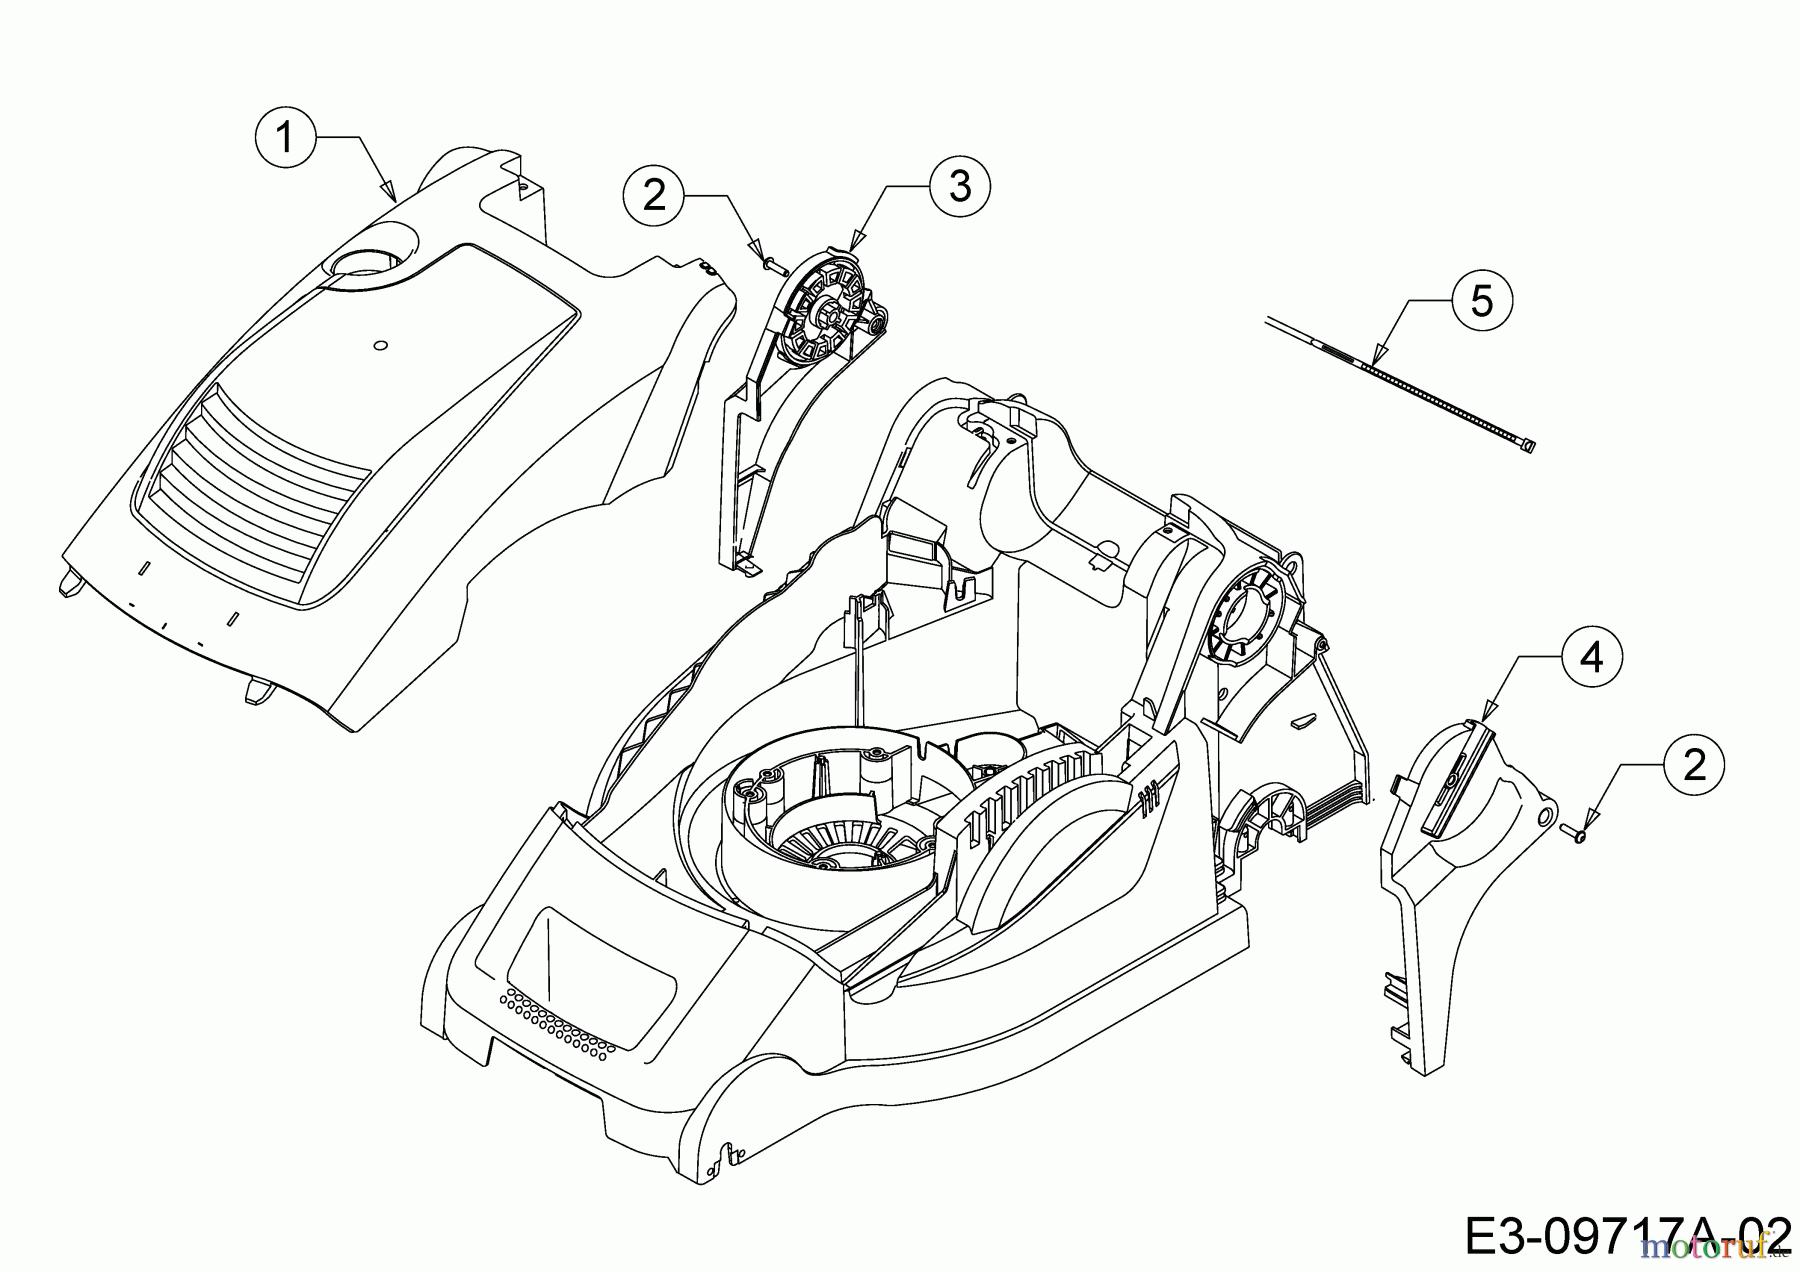  WOLF-Garten Expert Elektromäher mit Antrieb Expert 40 EA 18BRH1K-C50  (2014) Abdeckung seitlich, Motorhaube